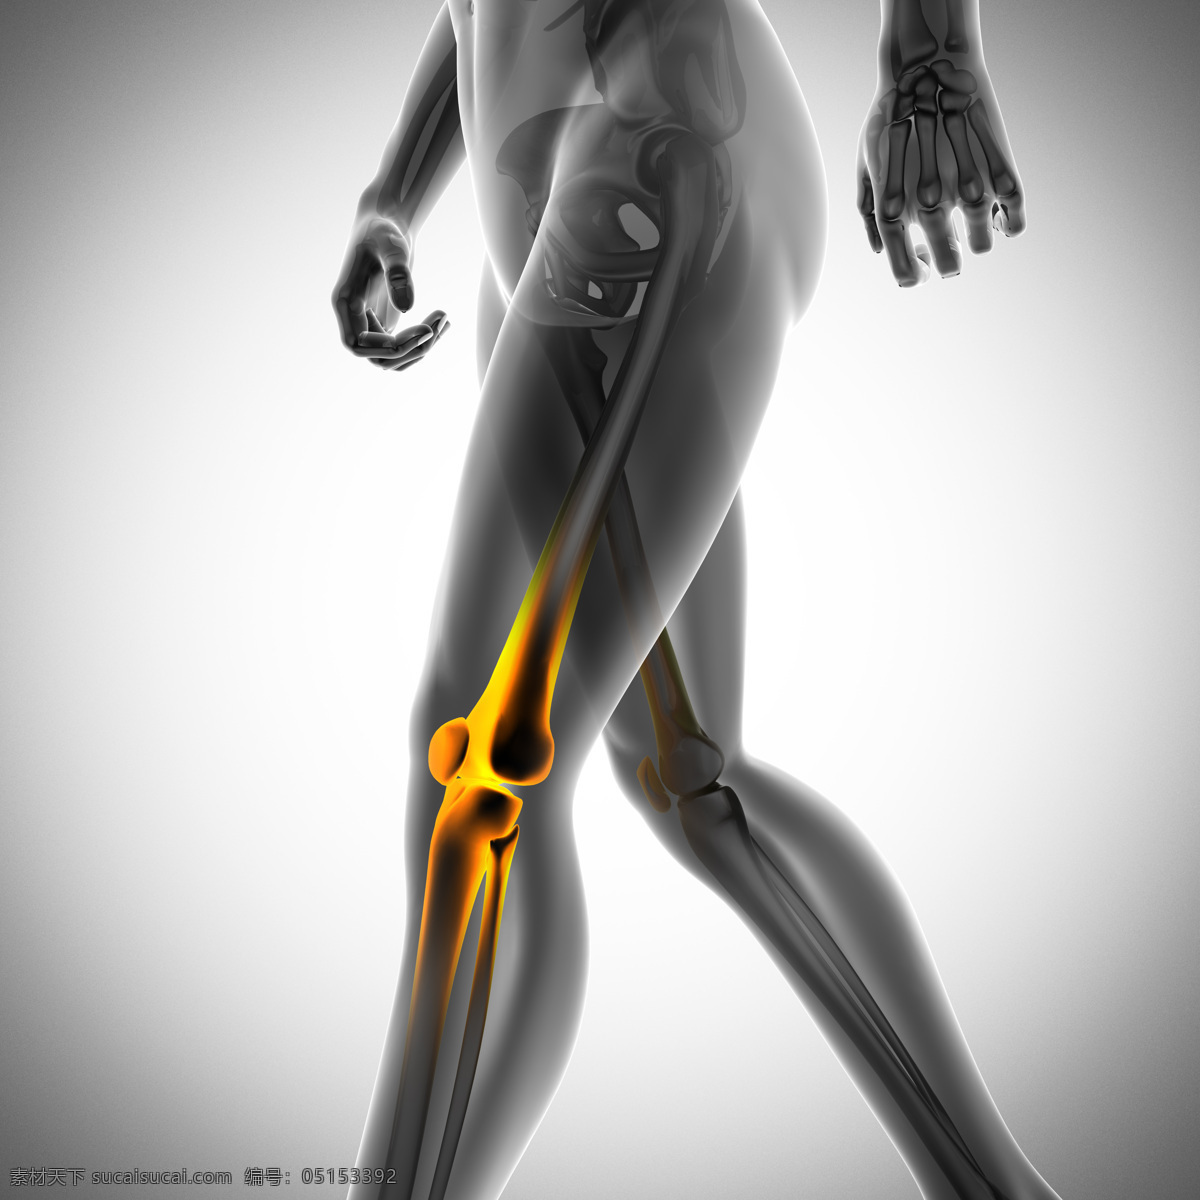 人体病痛 人体关节痛 医院 医疗 病痛示意图 病痛展示图 病痛 疾病 人体结构 人体骨骼 人体肌肉 x光 人体标本 人体构造 医疗护理 现代科技